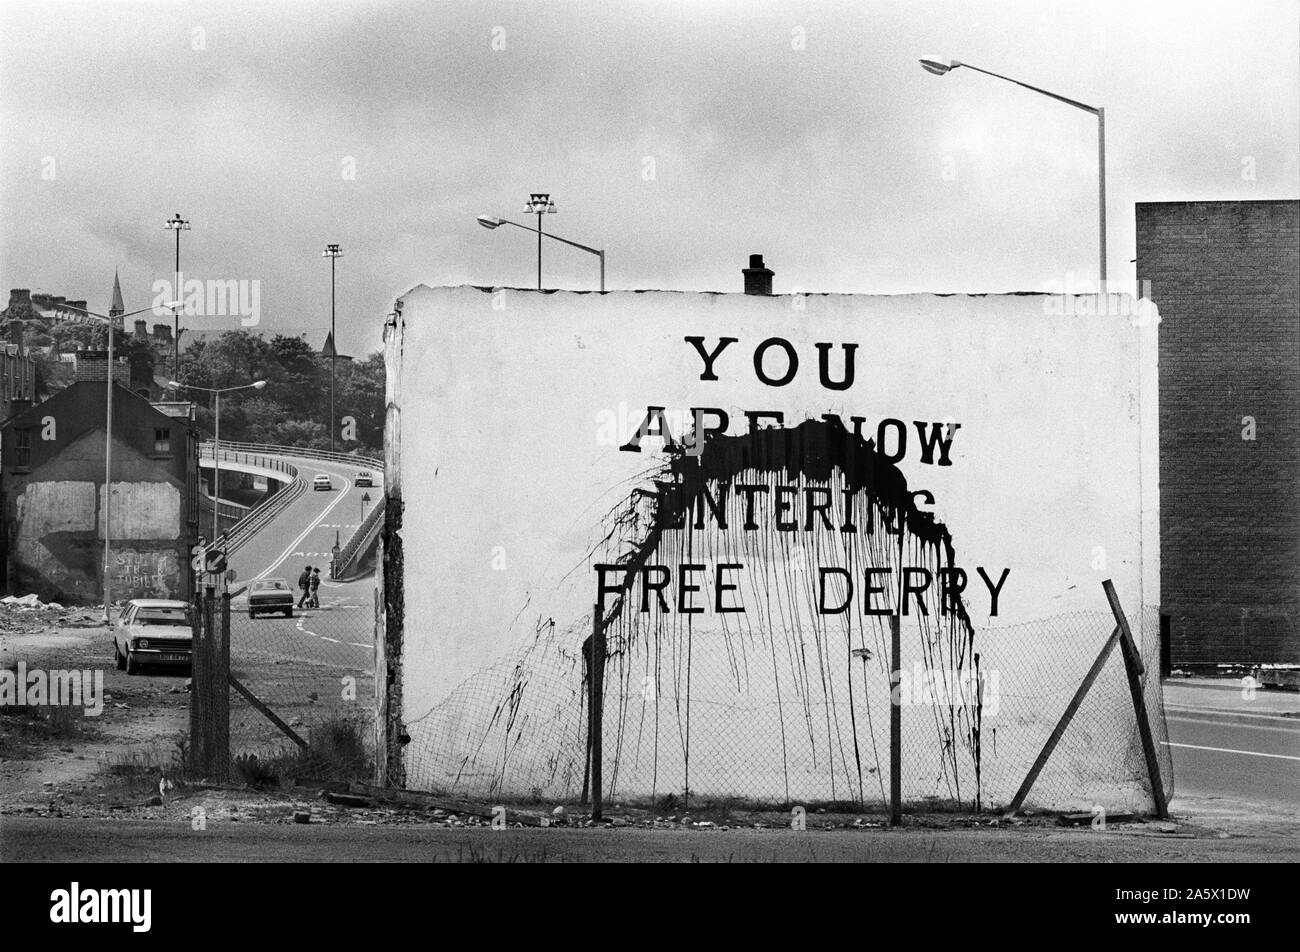 Los problemas Derry Irlanda del Norte Londonderry. 1979. Usted está entrando ahora en Free Derry mural pintado en el frontón de la casa destruida ahora conocemos como Free Derry Corner, situado en el cruce de la calle Fahan & Rossville Street. 1970 UK HOMER SYKES Foto de stock